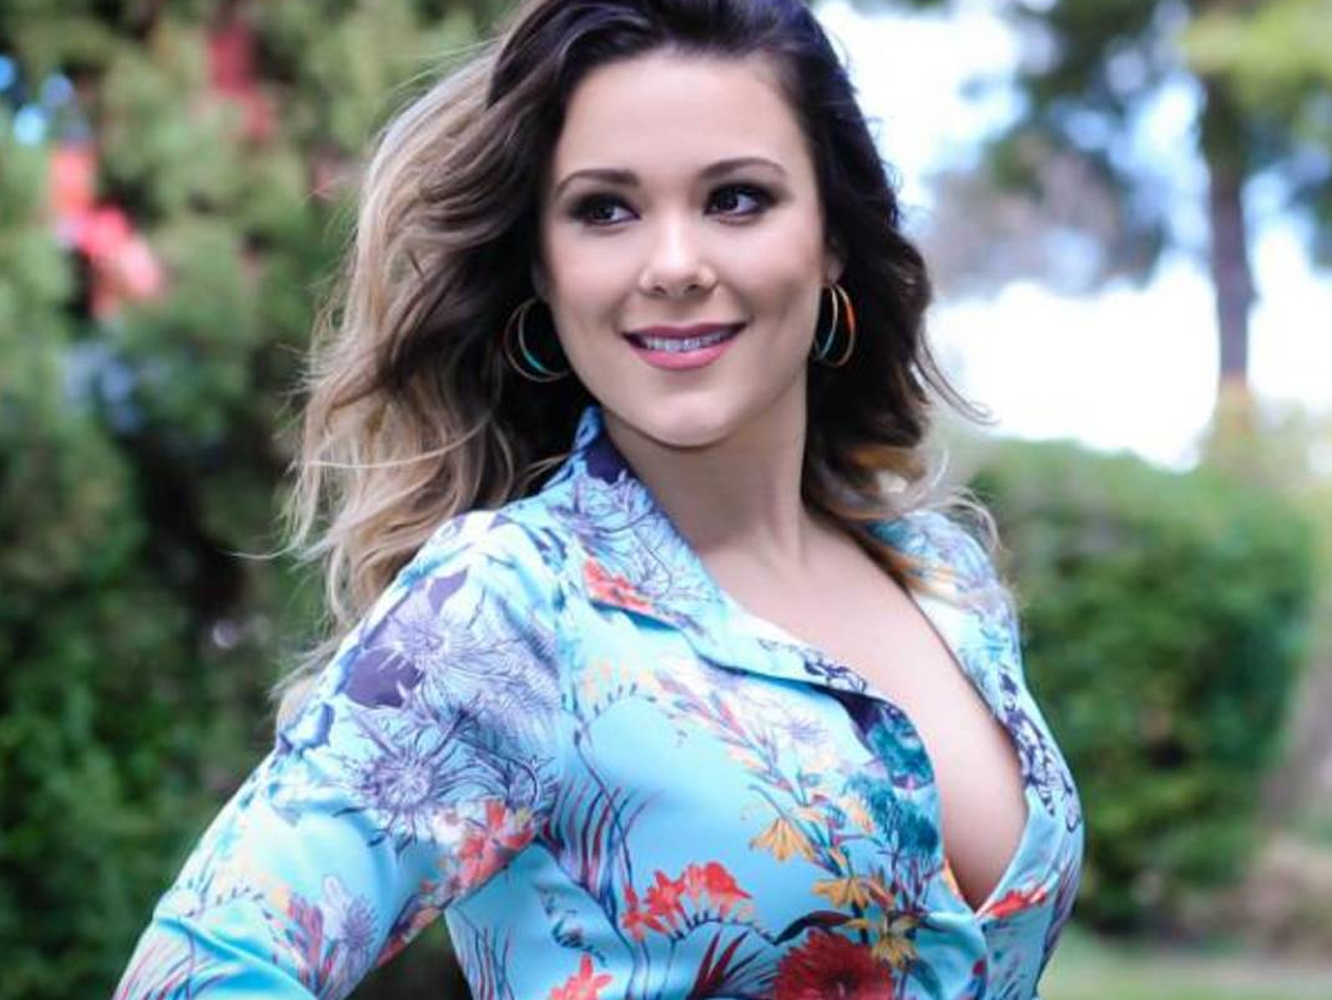  #LorenaGate en ‘OT’ | Lorena Gómez se viene arriba y da «like» a varios desafortunados comentarios en Twitter